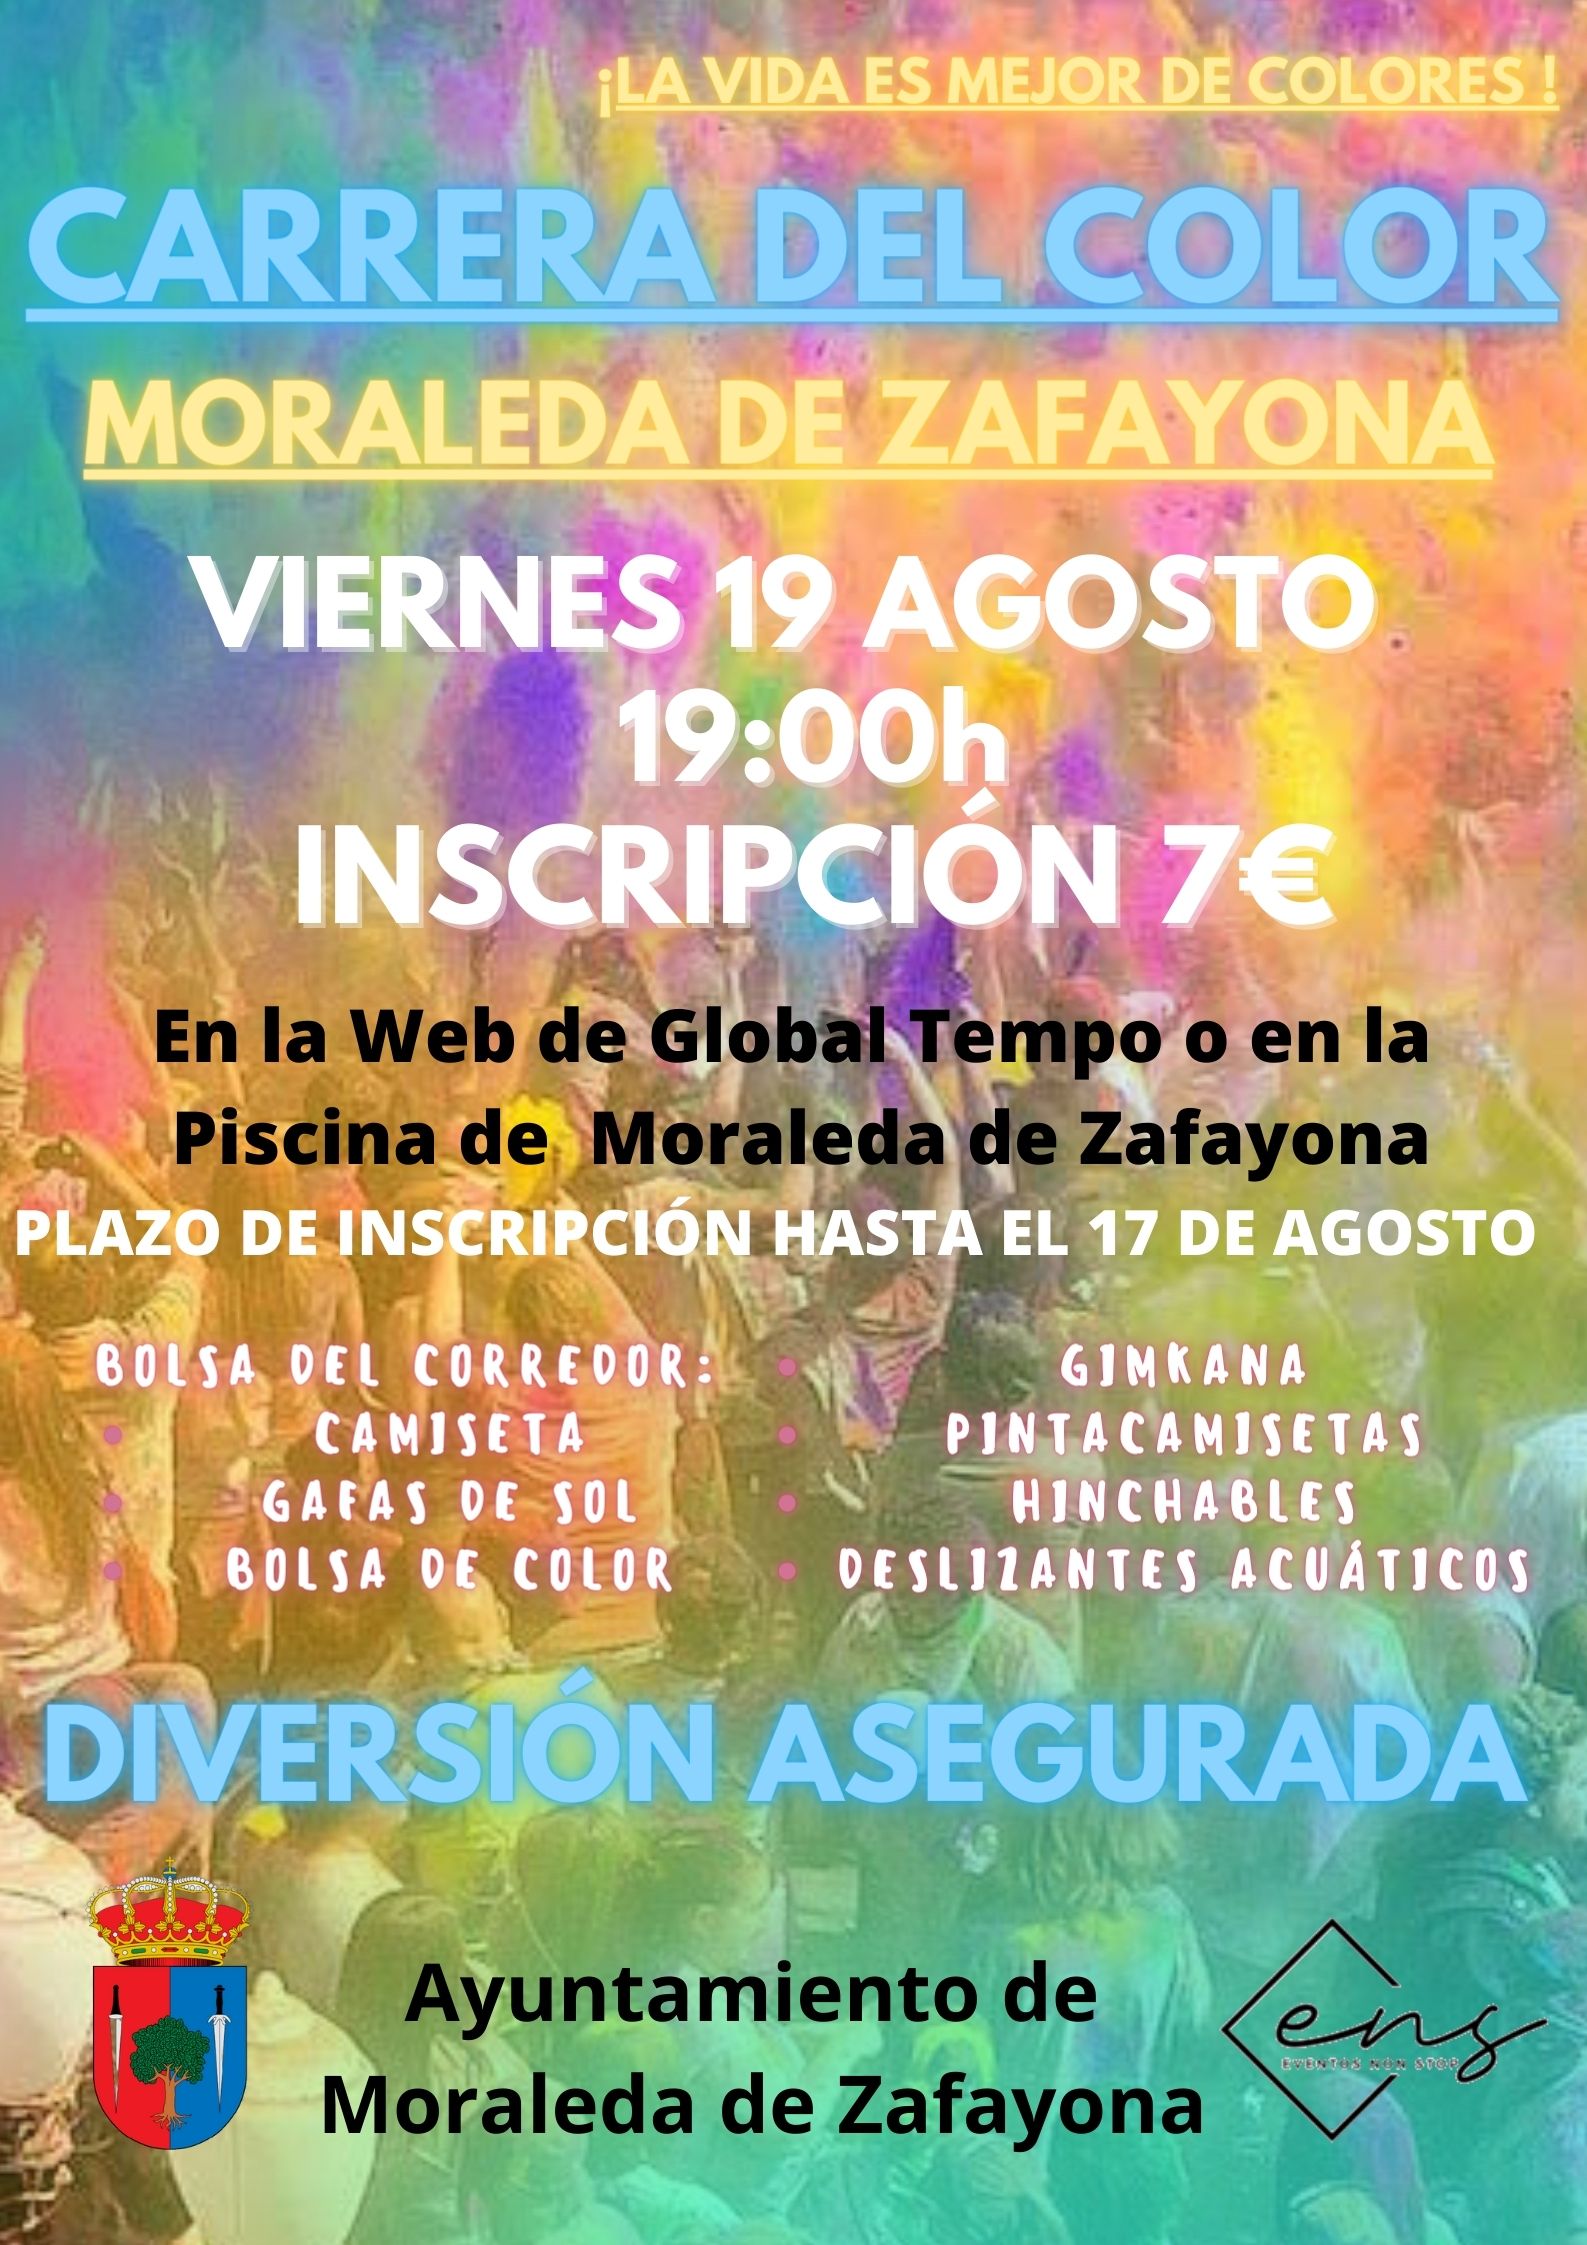 I CARRERA DEL COLOR MORALEDA DE ZAFAYONA